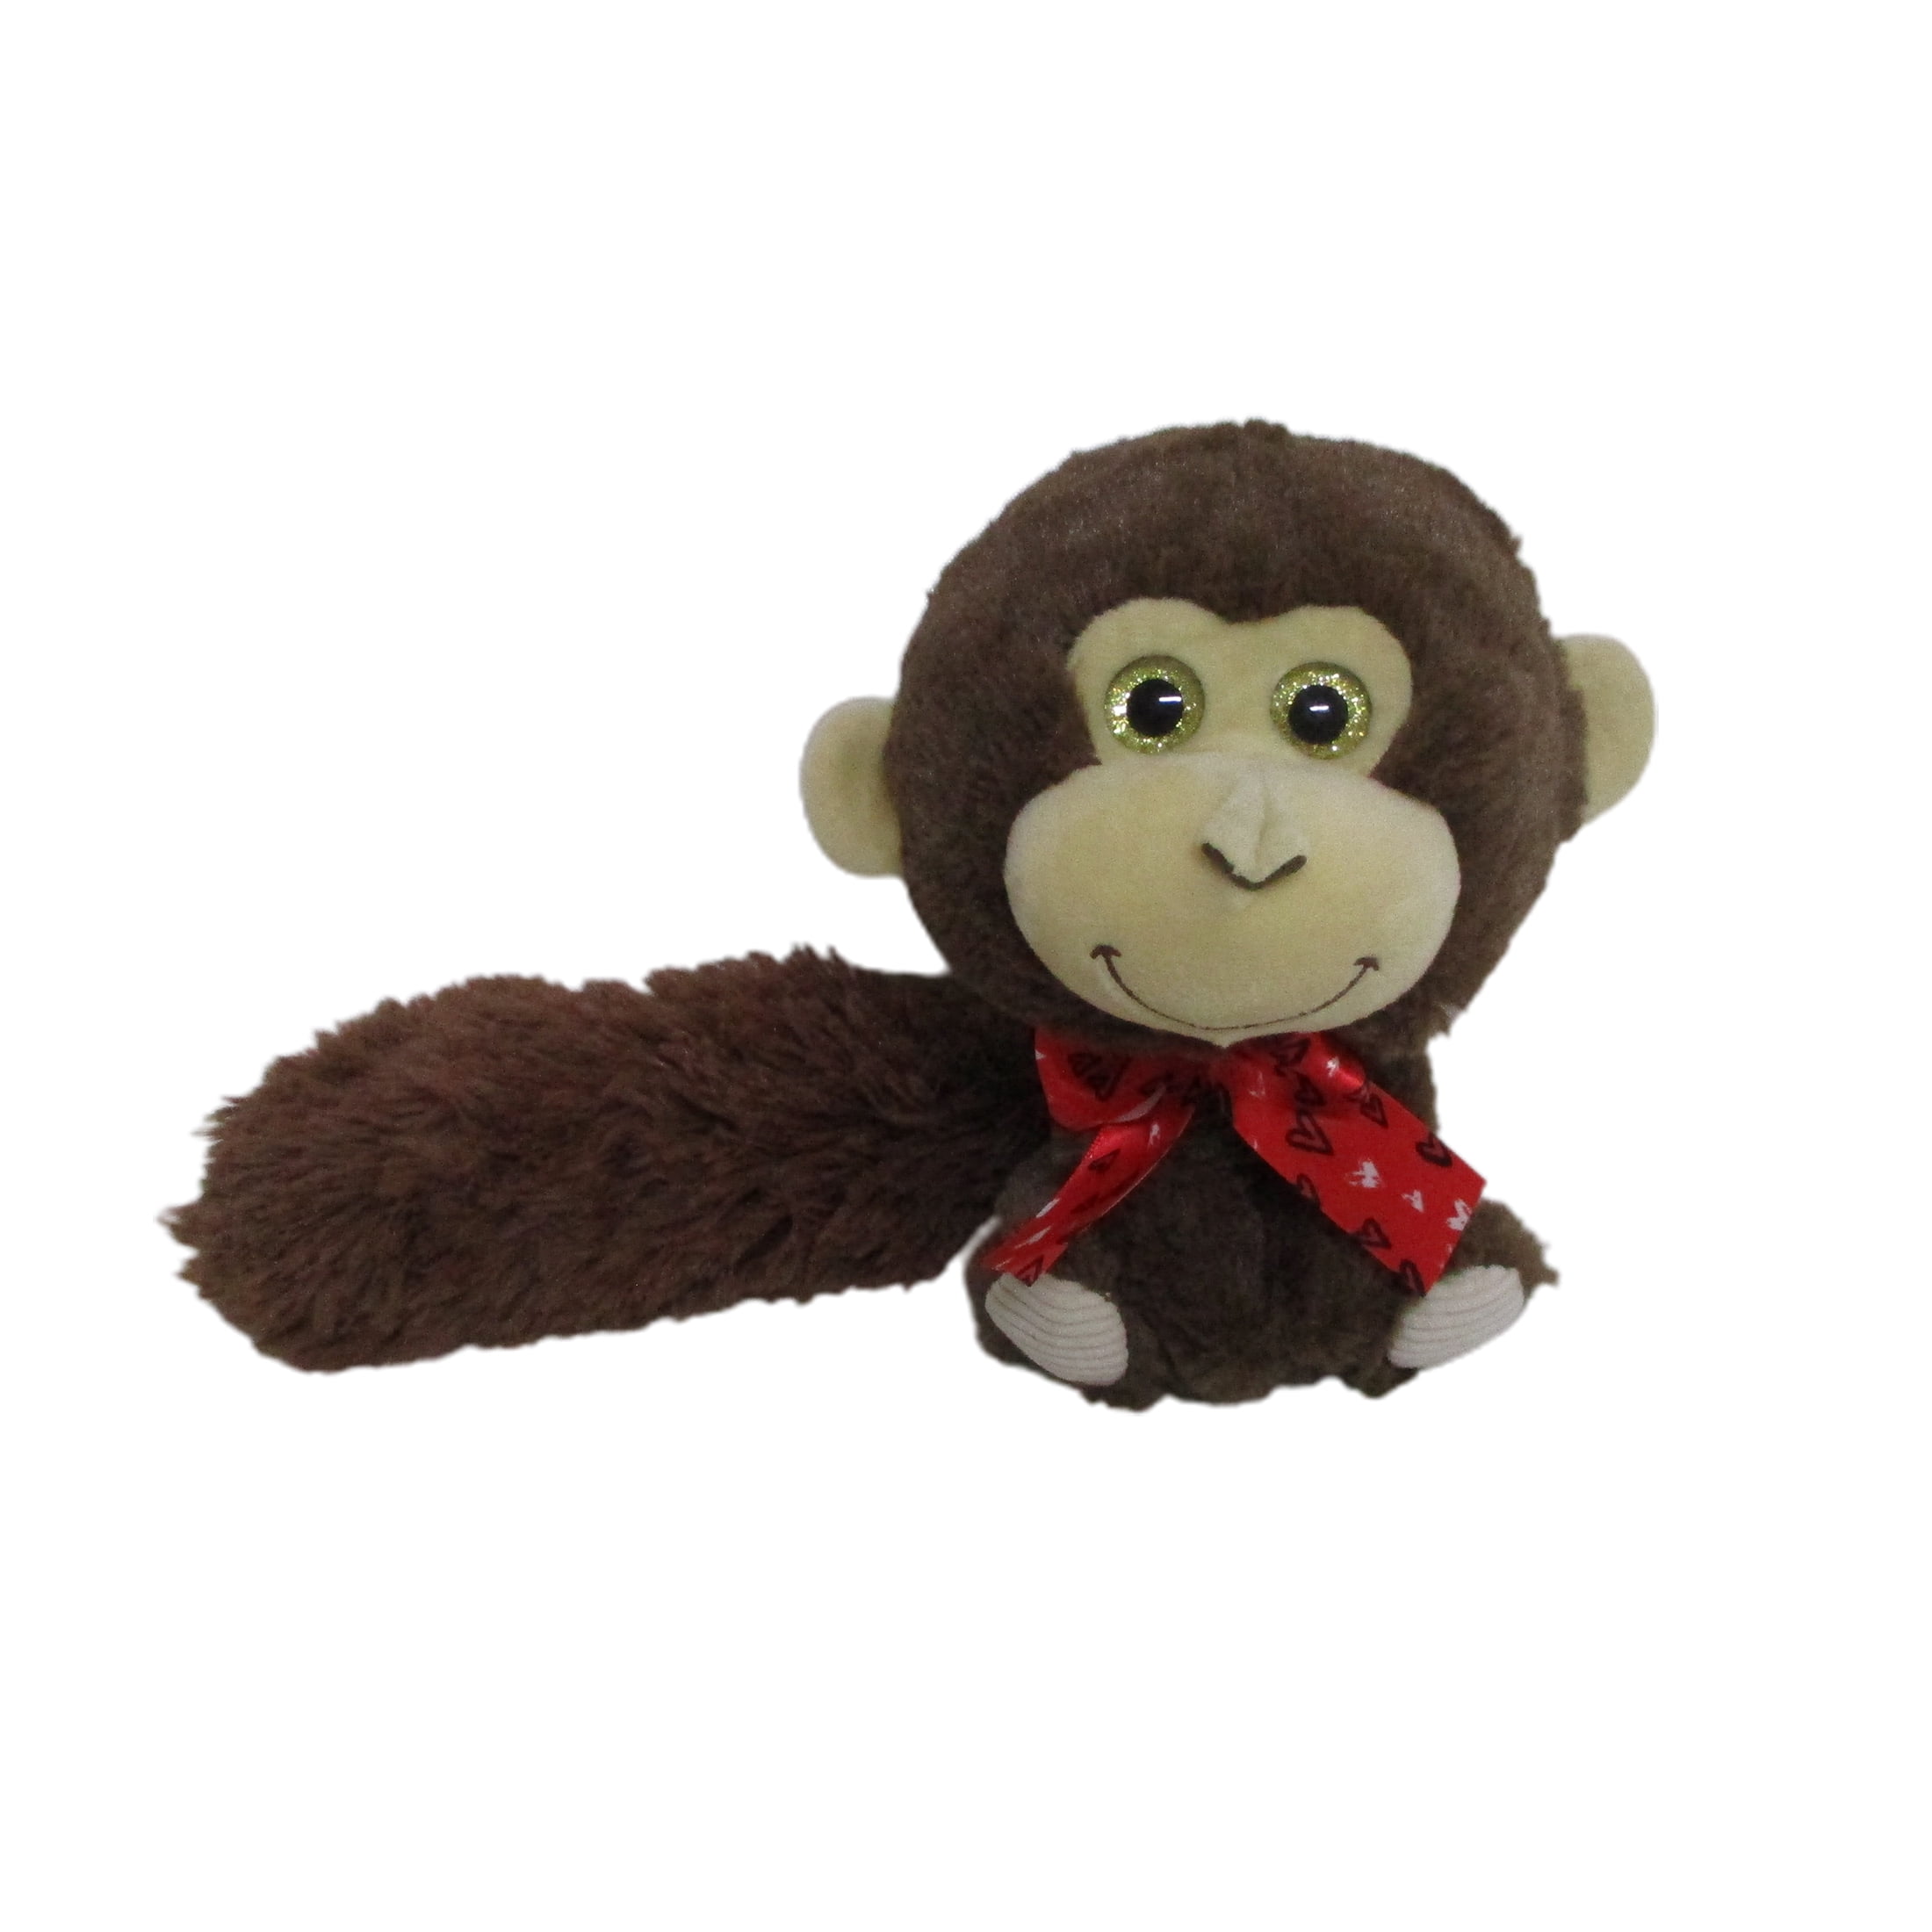 WAY TO CELEBRATE! Way To Celebrate 7'' Plush Big Tail Monkey Stuffed Animal